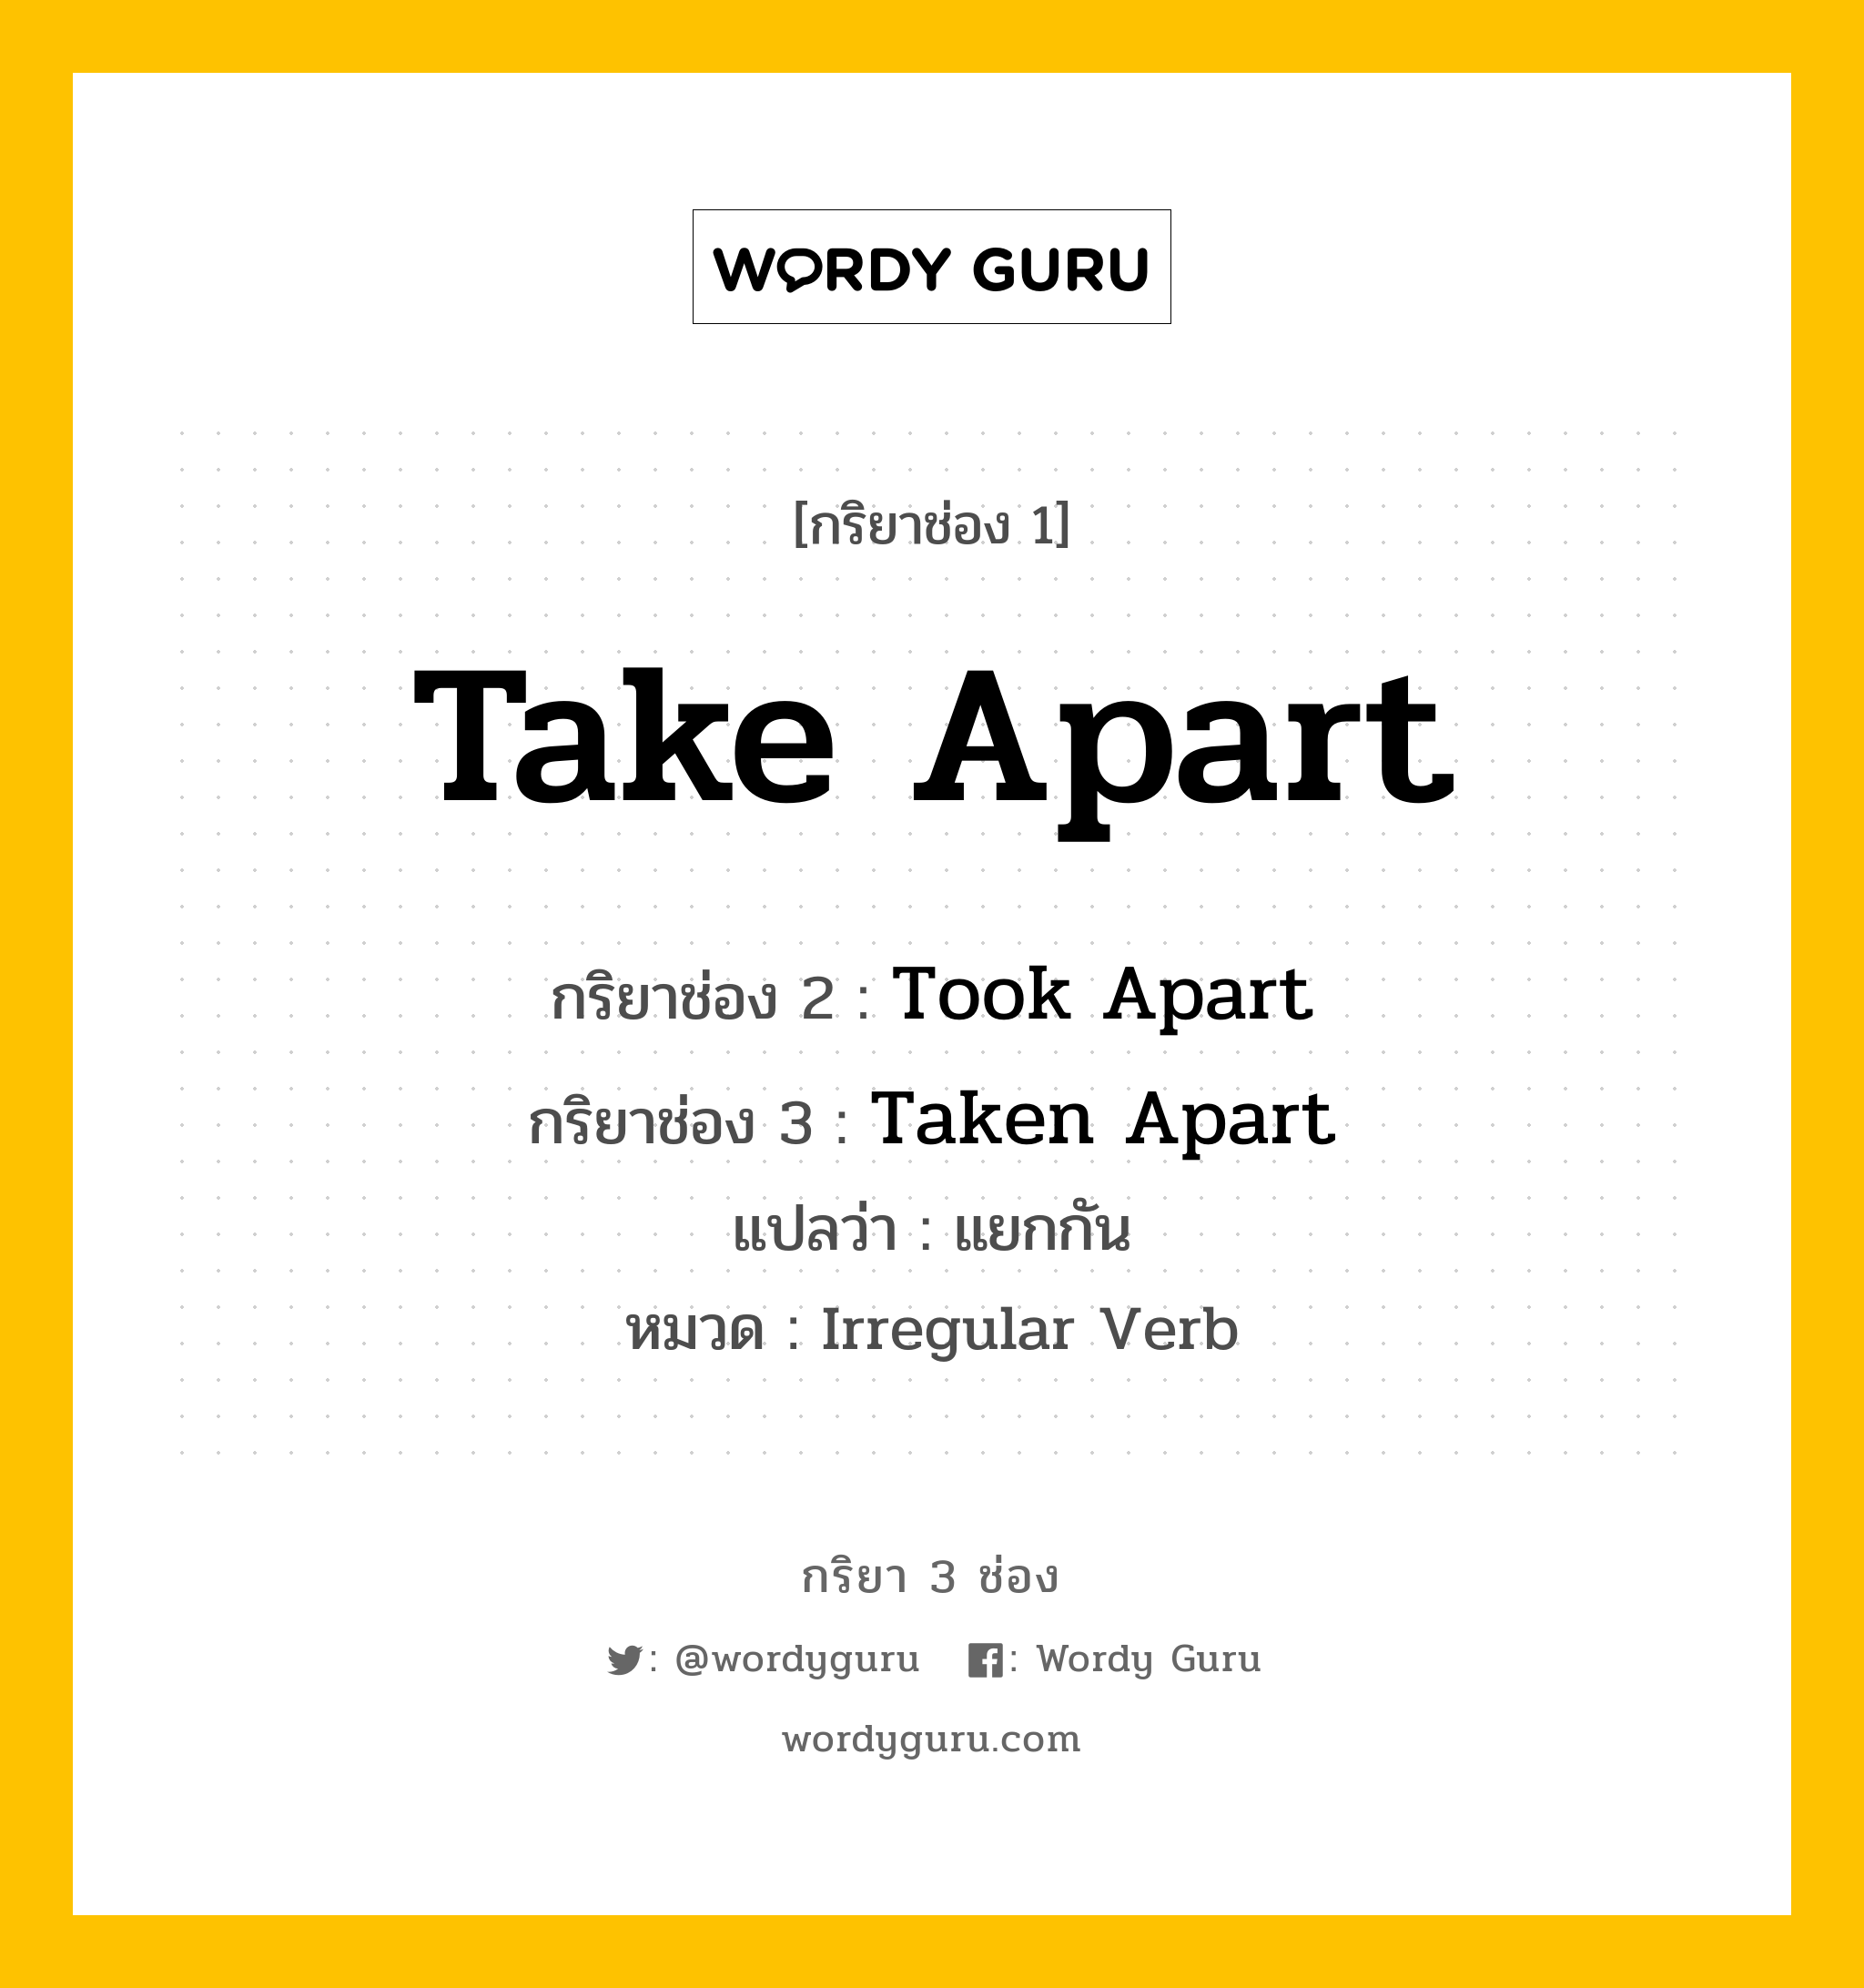 กริยา 3 ช่อง: Take Apart ช่อง 2 Take Apart ช่อง 3 คืออะไร, กริยาช่อง 1 Take Apart กริยาช่อง 2 Took Apart กริยาช่อง 3 Taken Apart แปลว่า แยกกัน หมวด Irregular Verb หมวด Irregular Verb